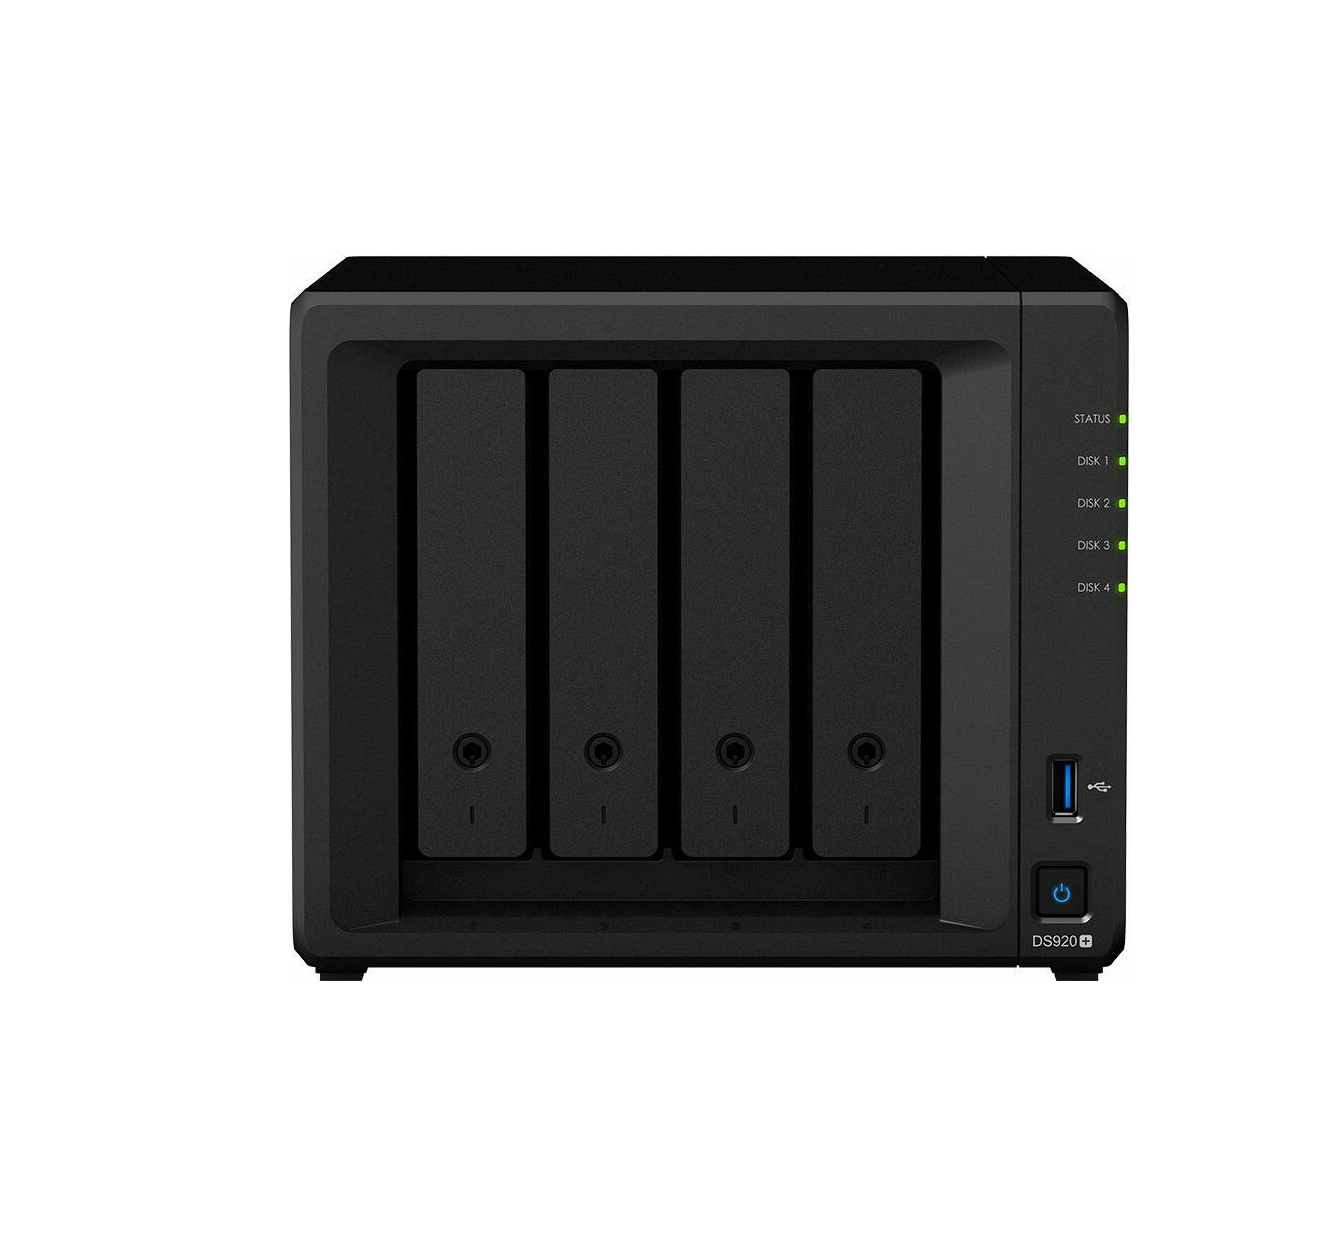 Synology DiskStation DS920+ Nas Server Πληρωμή έως 24 δόσεις